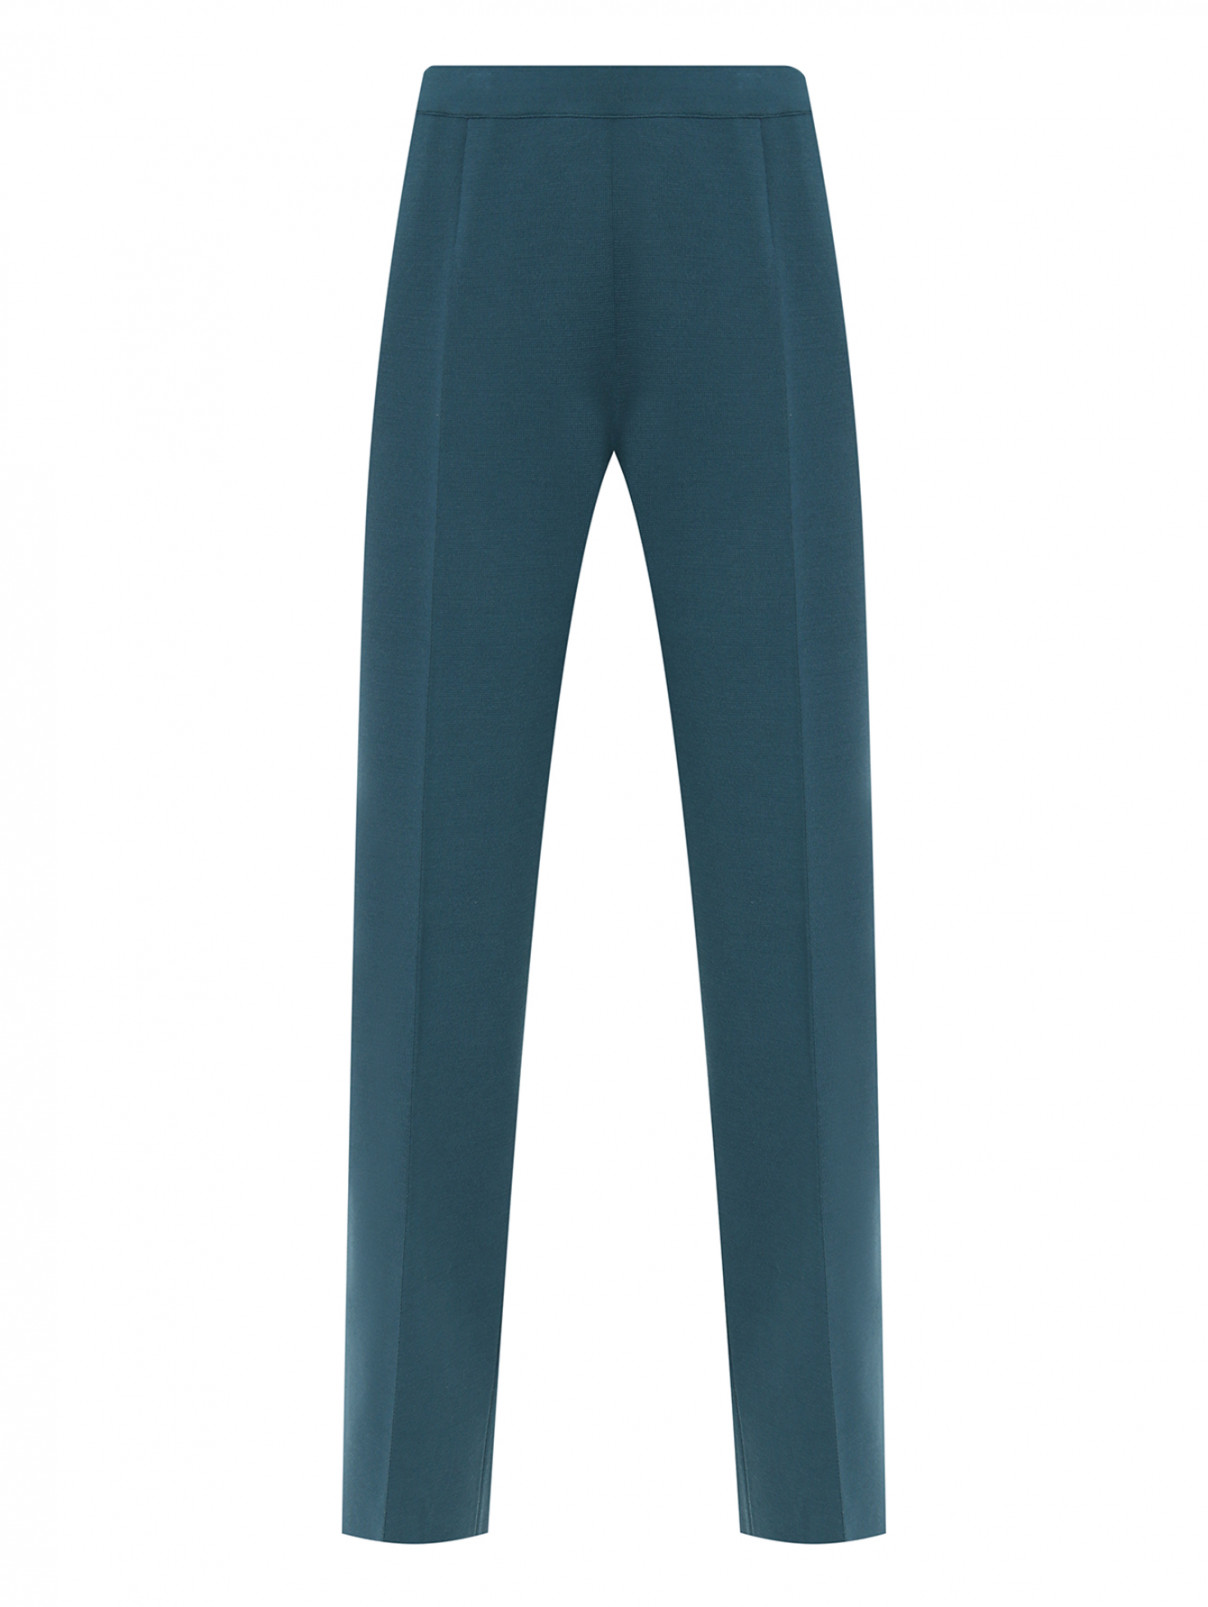 Трикотажные брюки со стрелками MRZ  –  Общий вид  – Цвет:  Зеленый